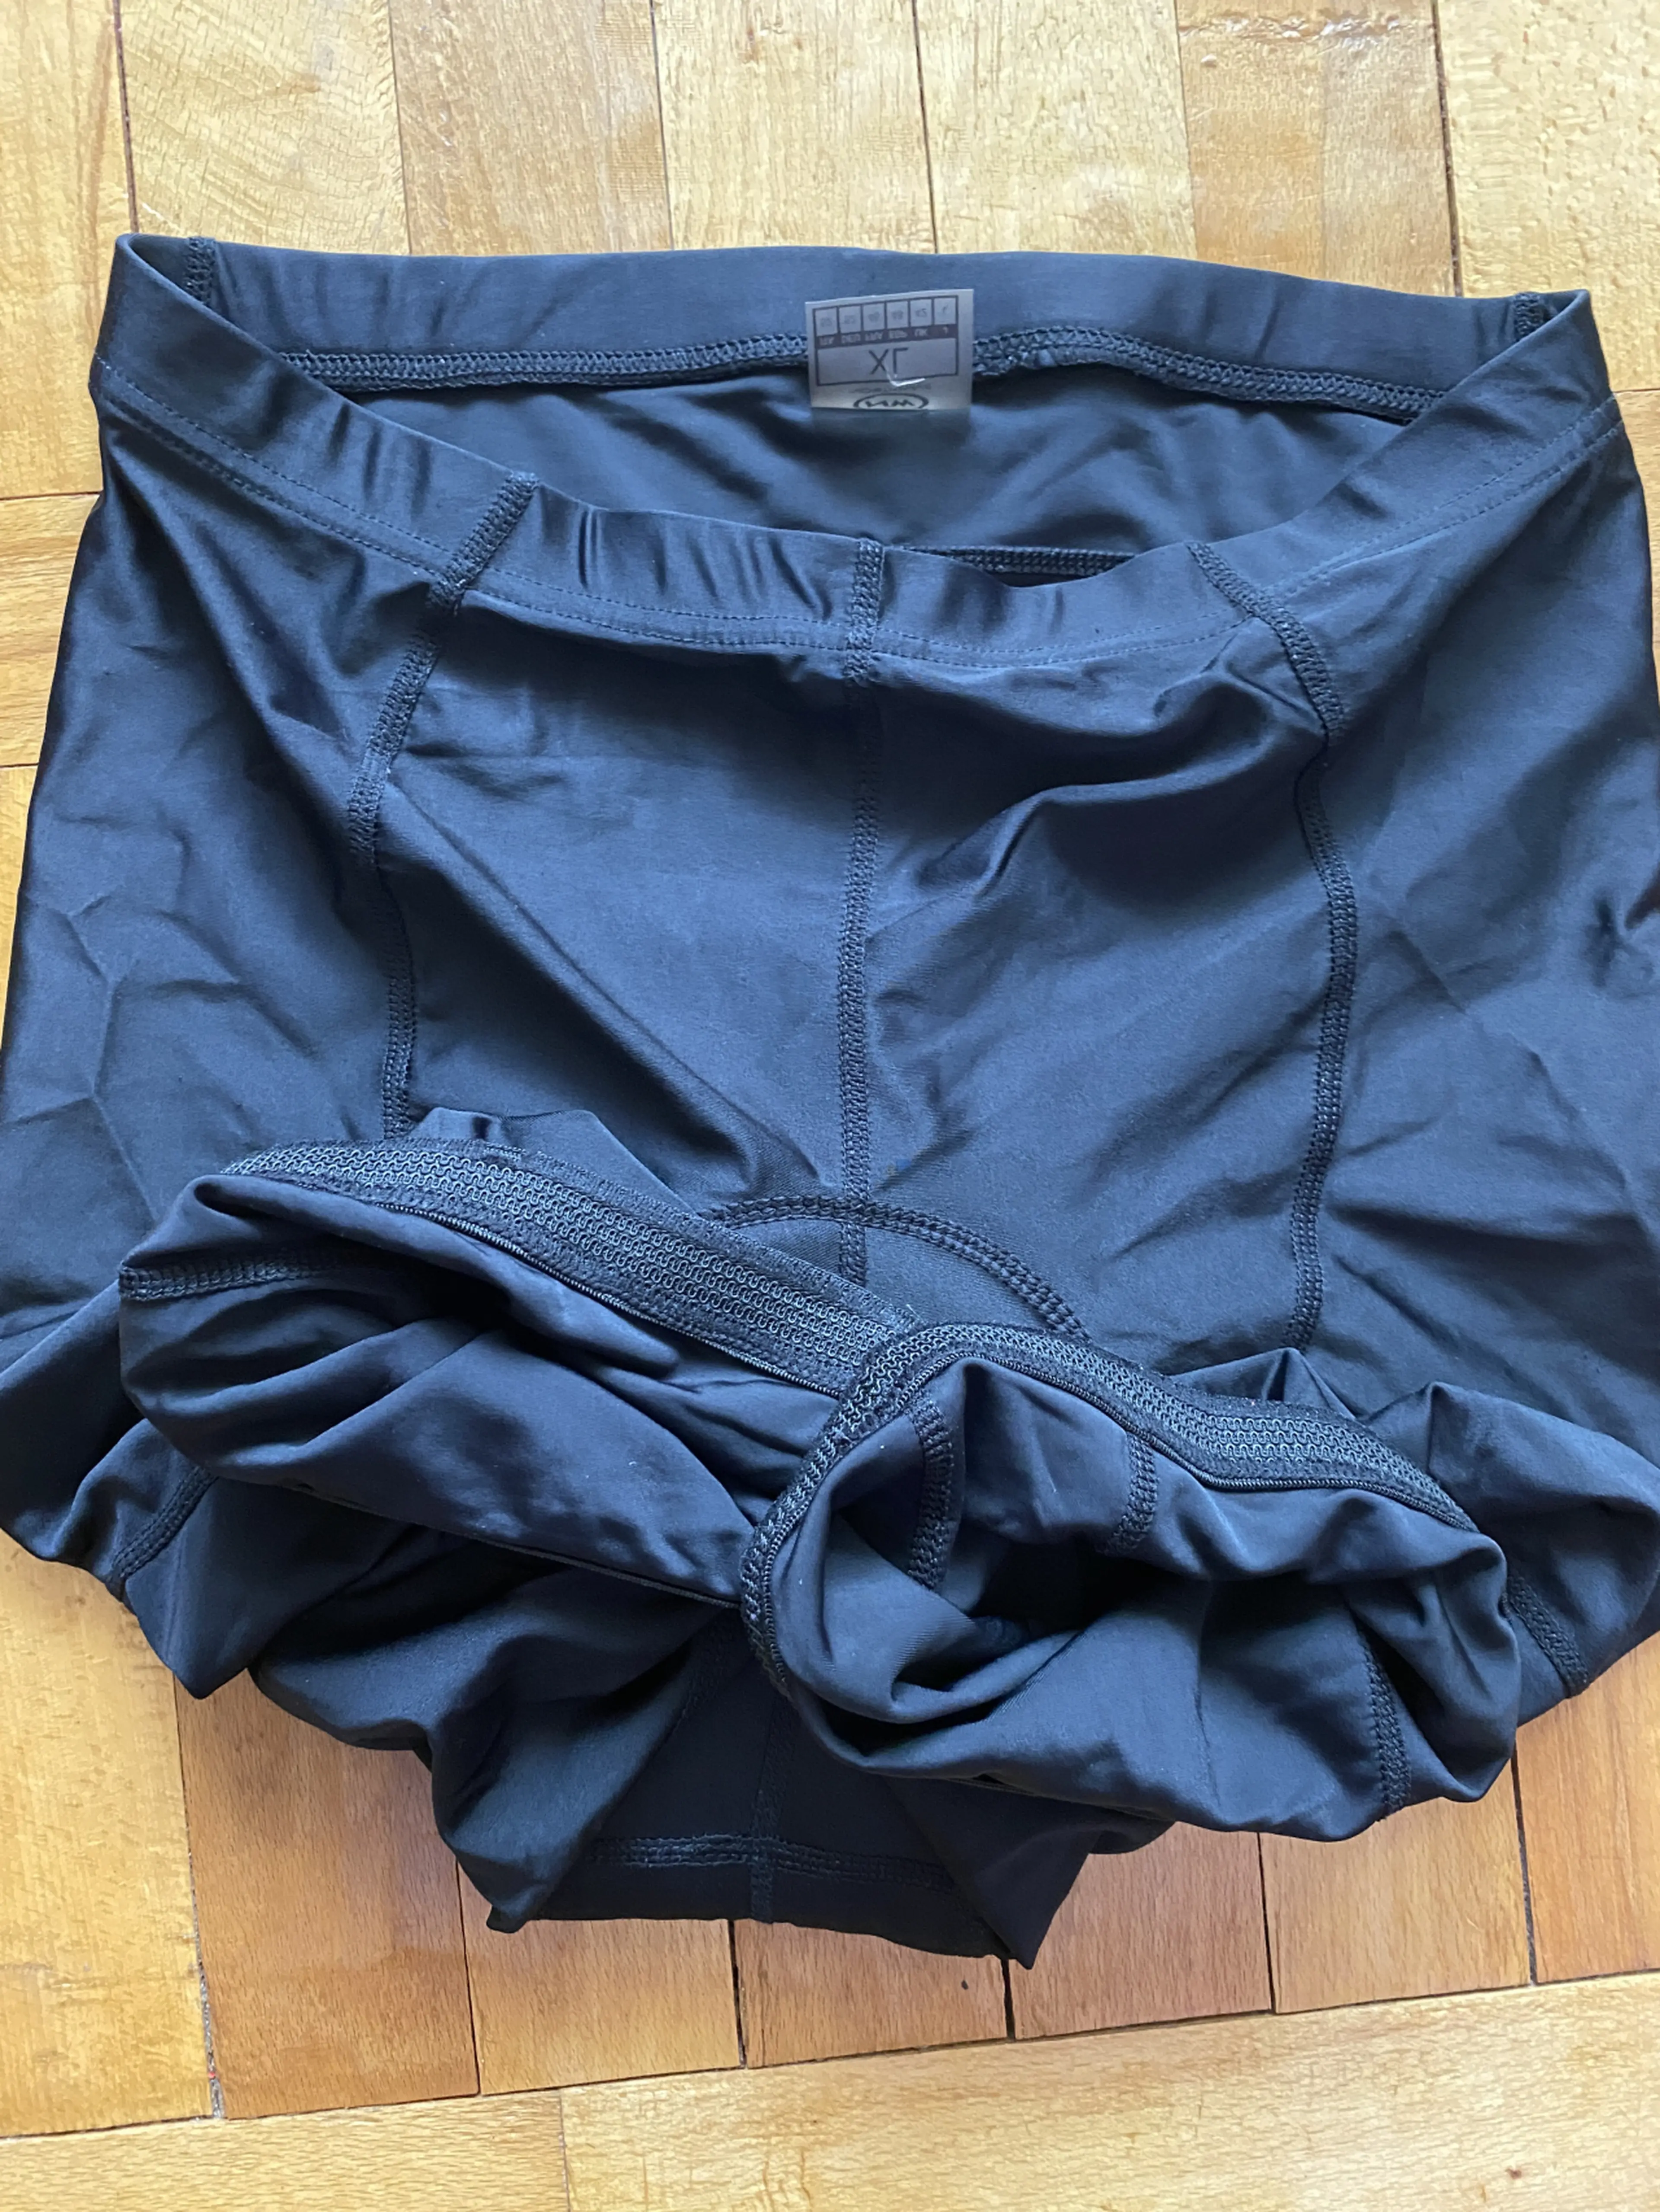 3. Pantaloni NW XL